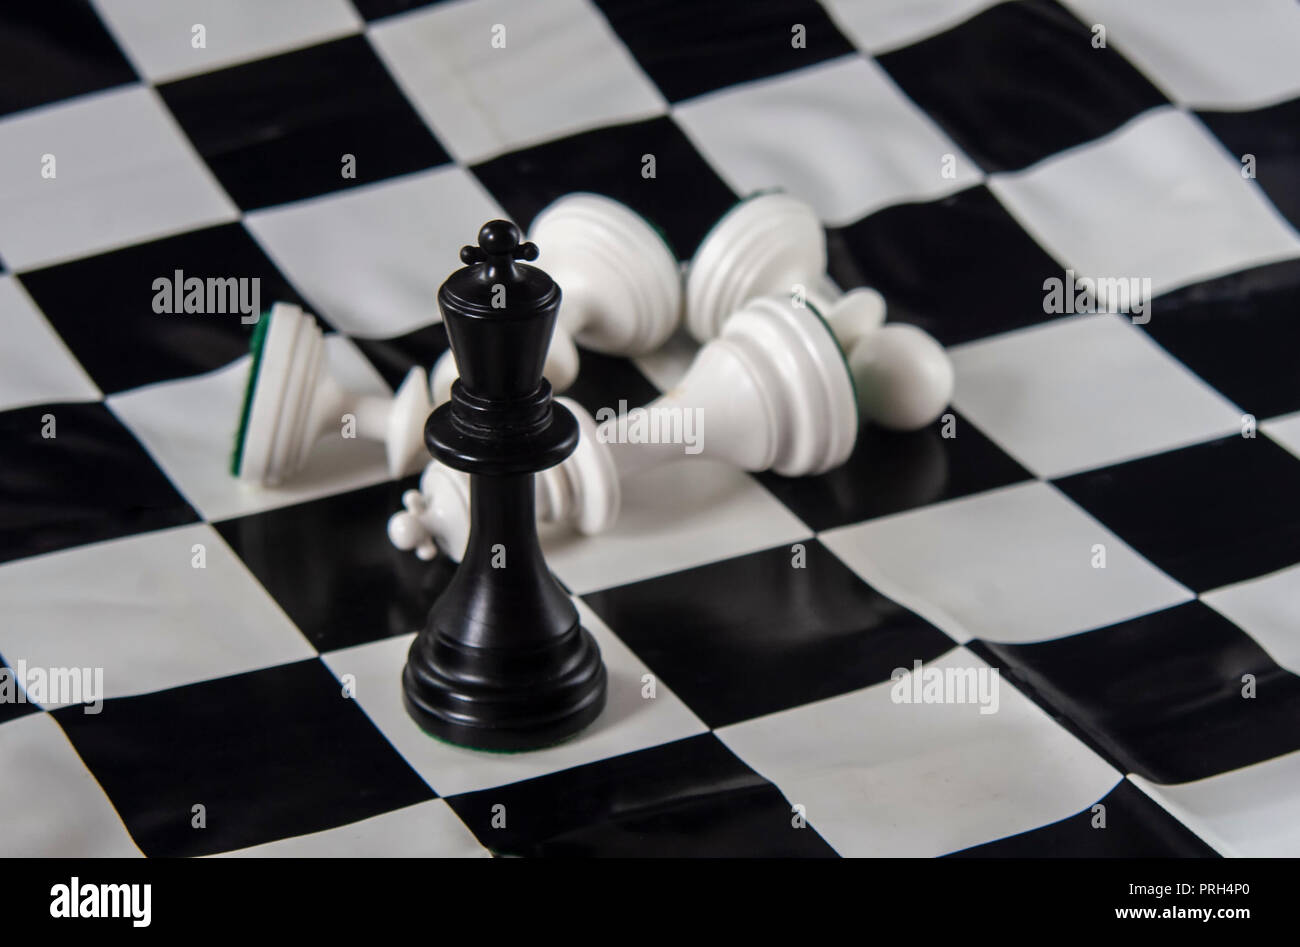 На шахматной доске осталось 5 белых фигур. Черный шахматный Король. Белый Король на шахматной доске. Шахматы валяются. Шахматная Королева и пешки лежат.